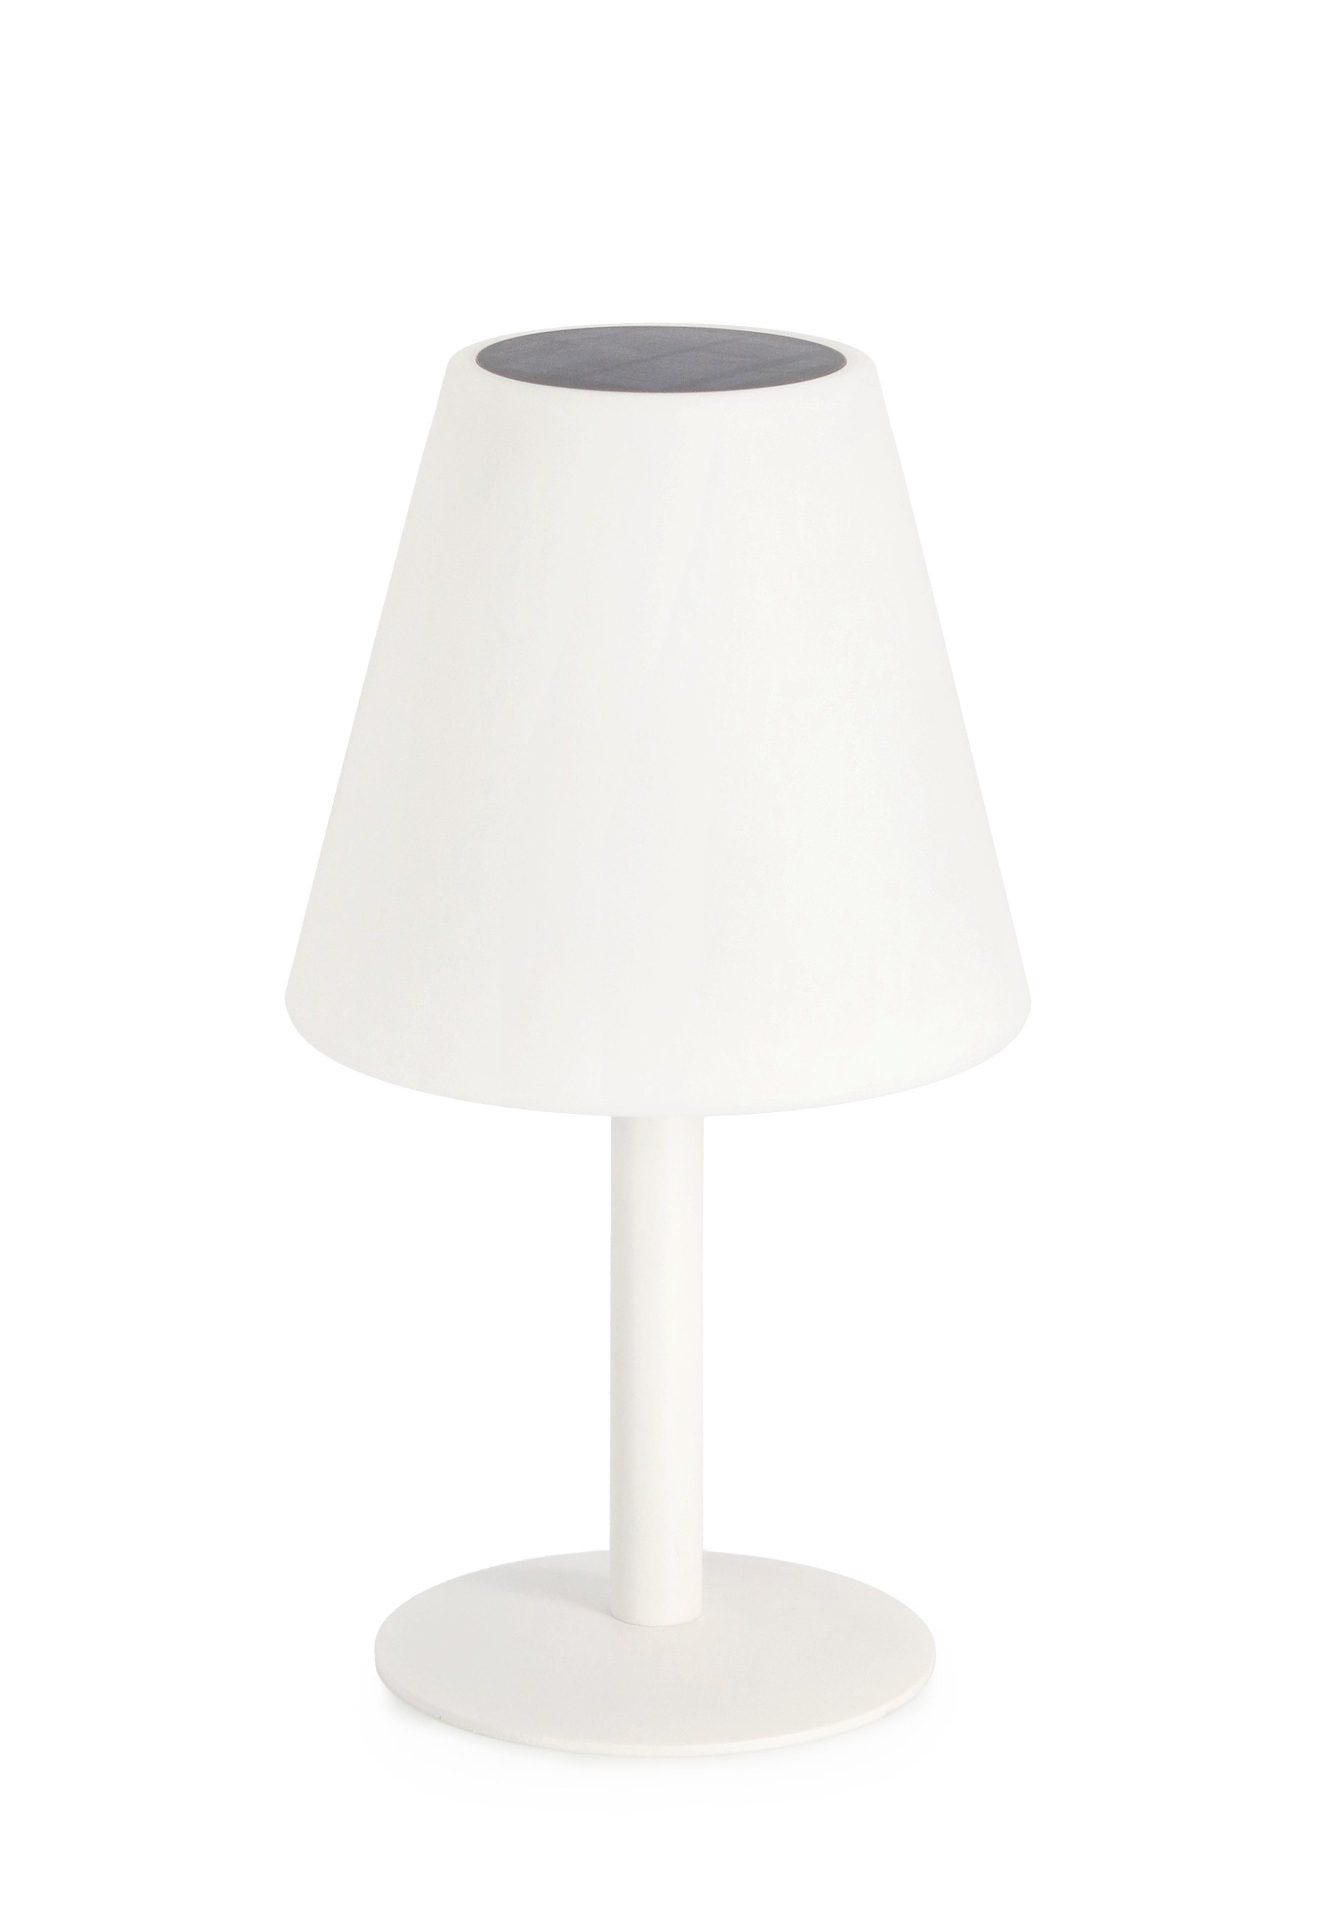 Die Outdoor Lampe Luna überzeugt mit ihrem klassischen Design. Gefertigt wurde sie aus Kunststoff, welches einen weißen Farbton besitzt. Das Gestell ist aus Metall und hat eine weiße Farbe. Die Lampe verfügt über einen Durchmesser von 20 cm und ist für de